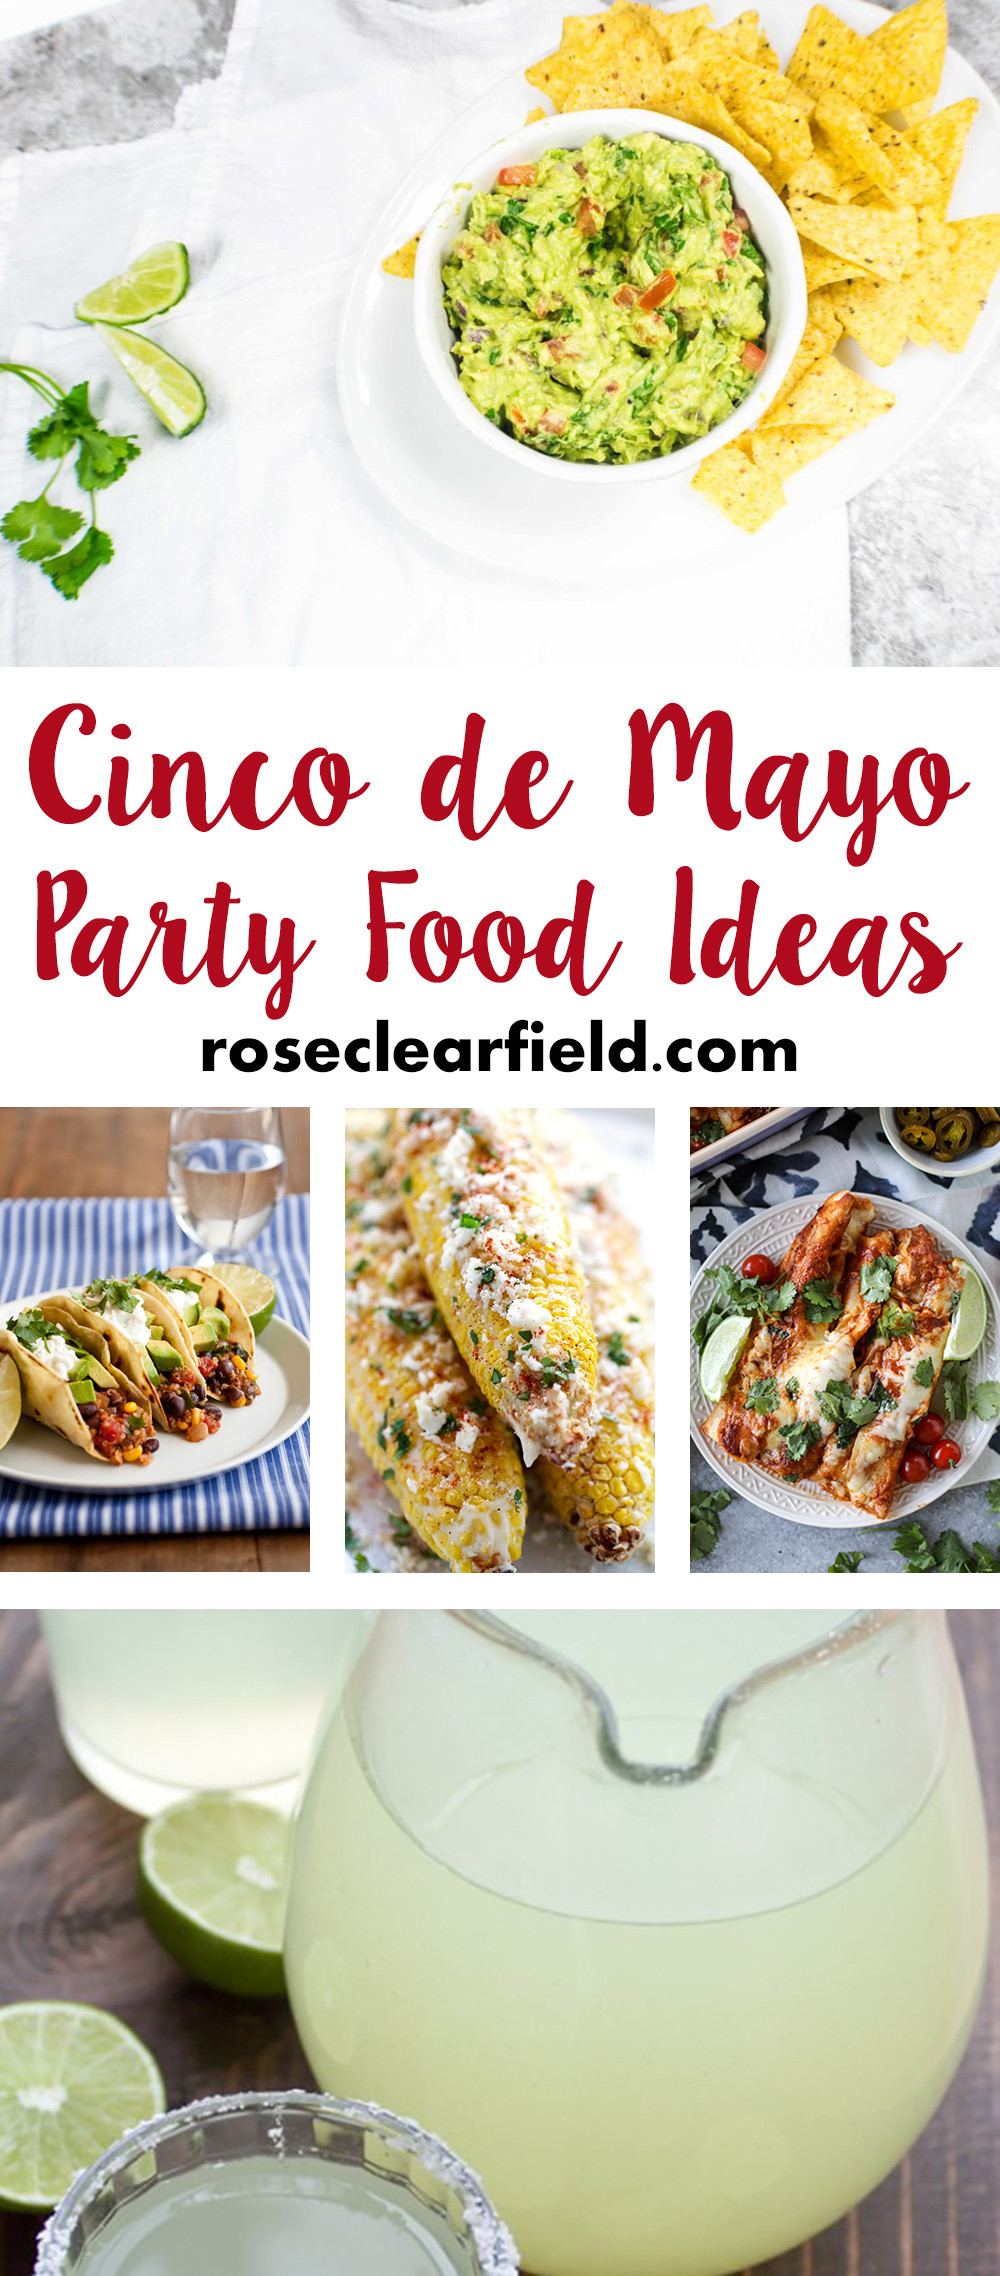 Cinco De Mayo Party Food Ideas
 Cinco de Mayo Party Food Ideas • Rose Clearfield